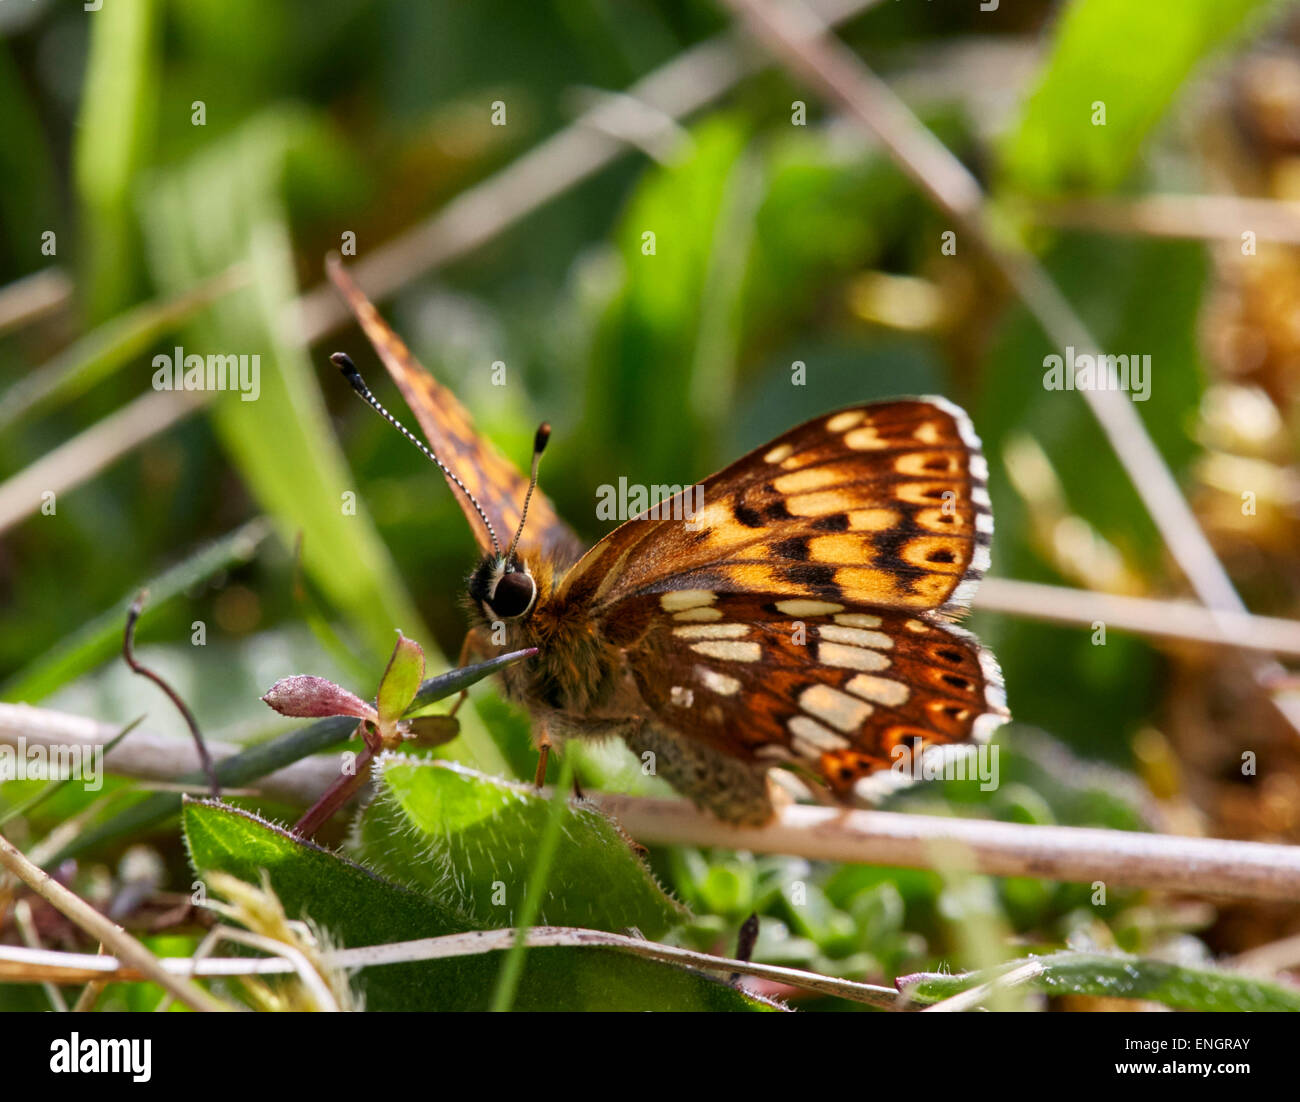 Herzog von Burgund Schmetterling. Noar Hill Nature Reserve, Selborne, Hampshire, England. Stockfoto